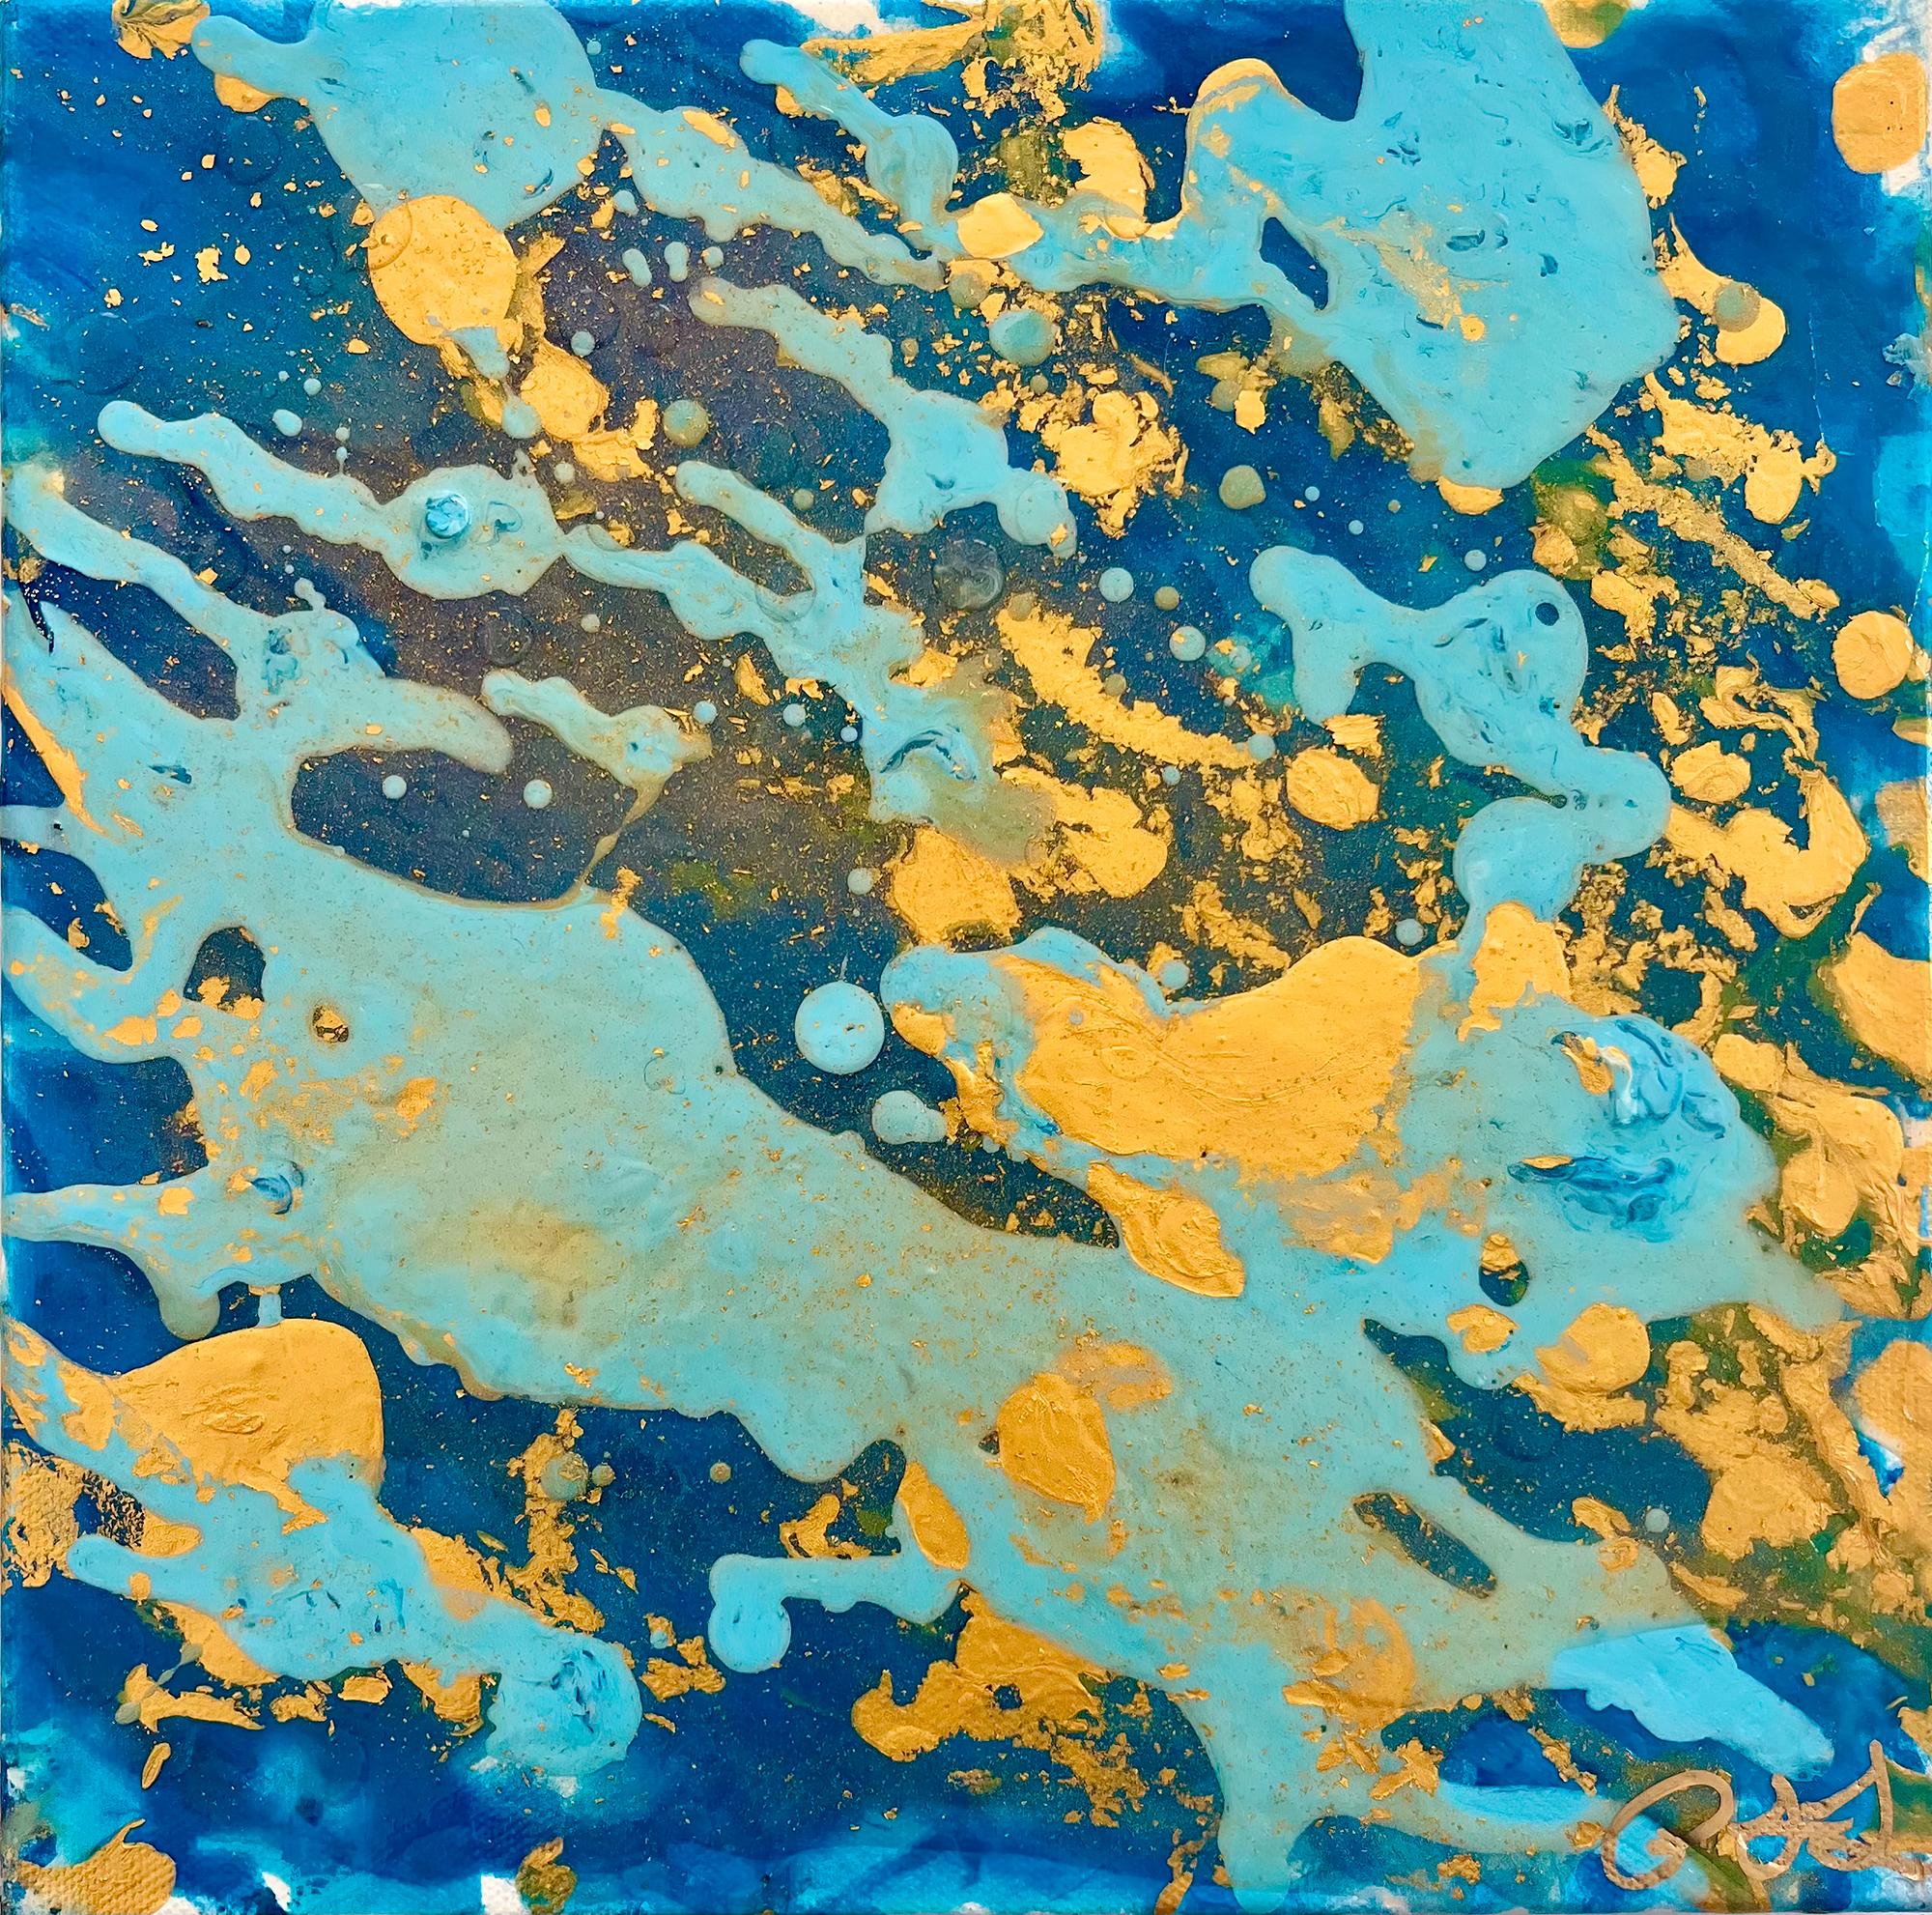 Rivers von Paula Jo Lentz – Painting von Unknown